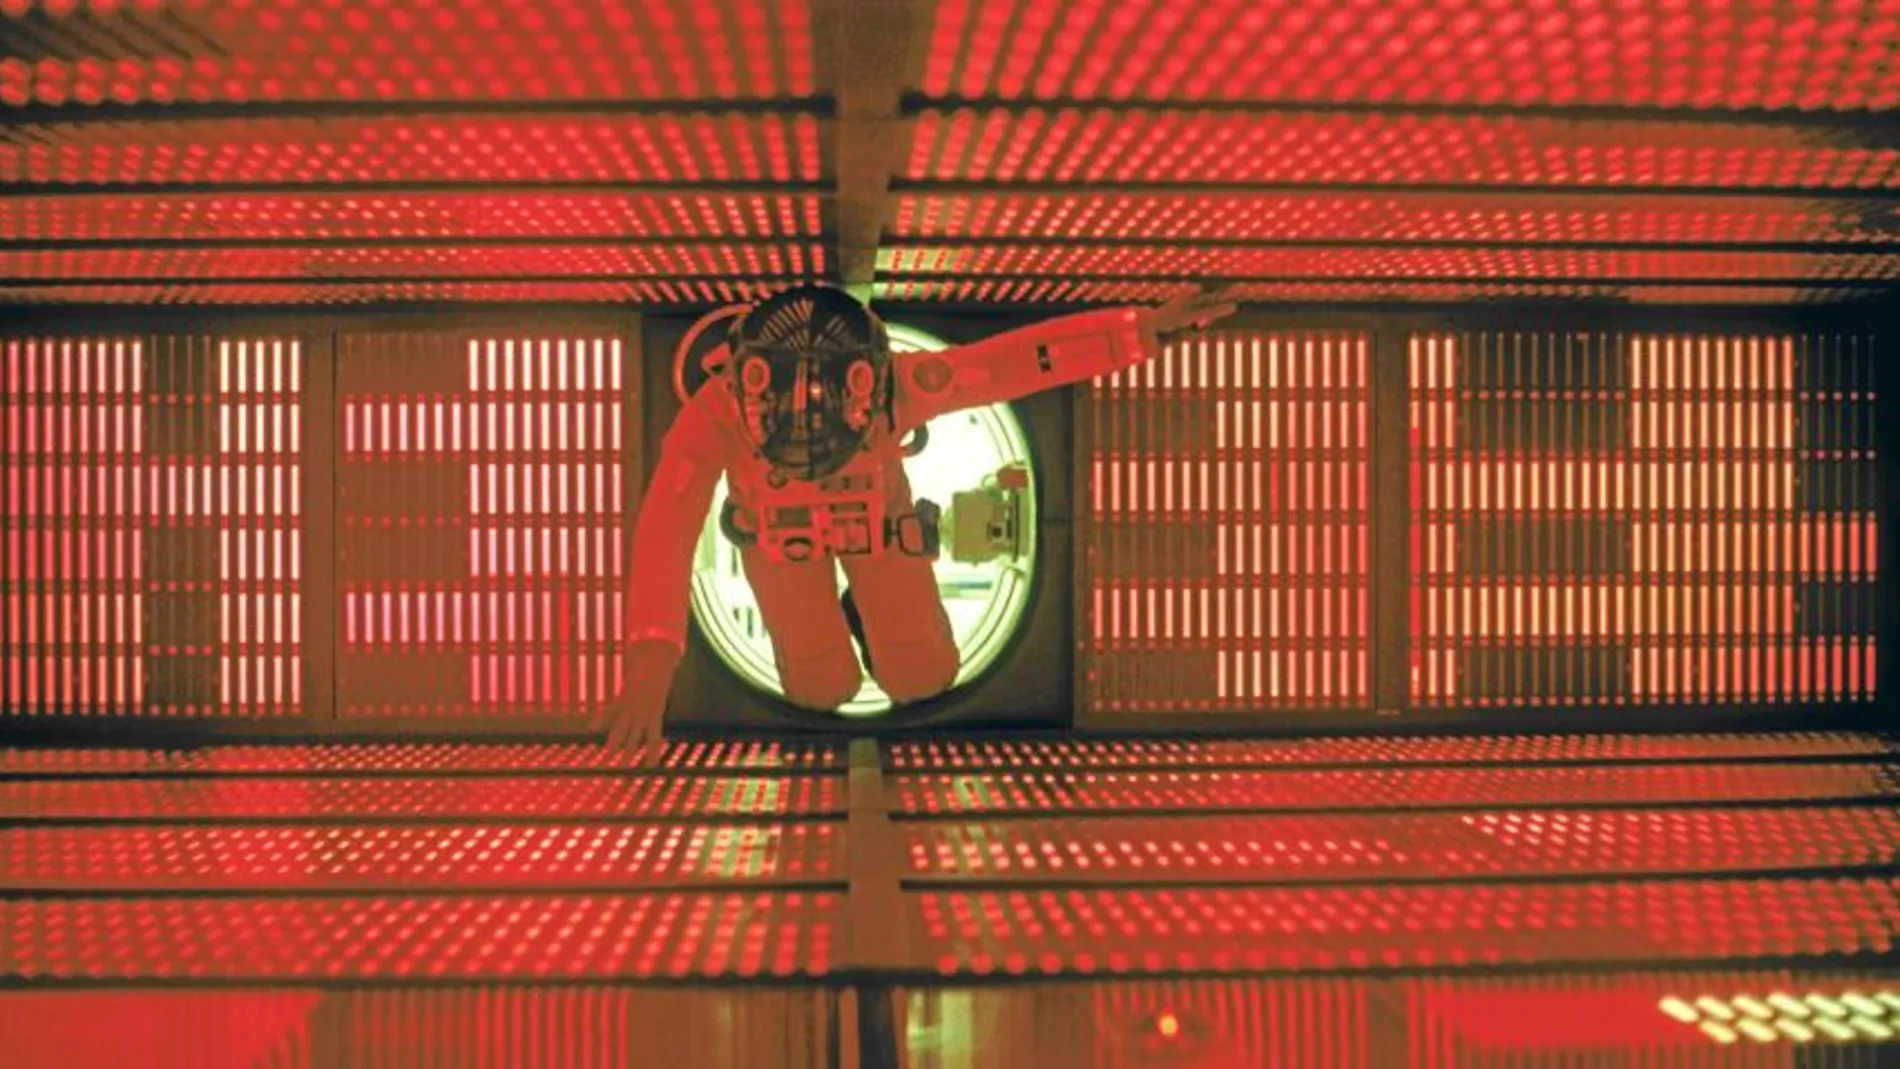 La estética del filme (en la imagen, David Bowman interpretado por Keir Dullea en el interior de la máquina HAL) creó un precedente que ha marcado a películas posteriores de ciencia ficción